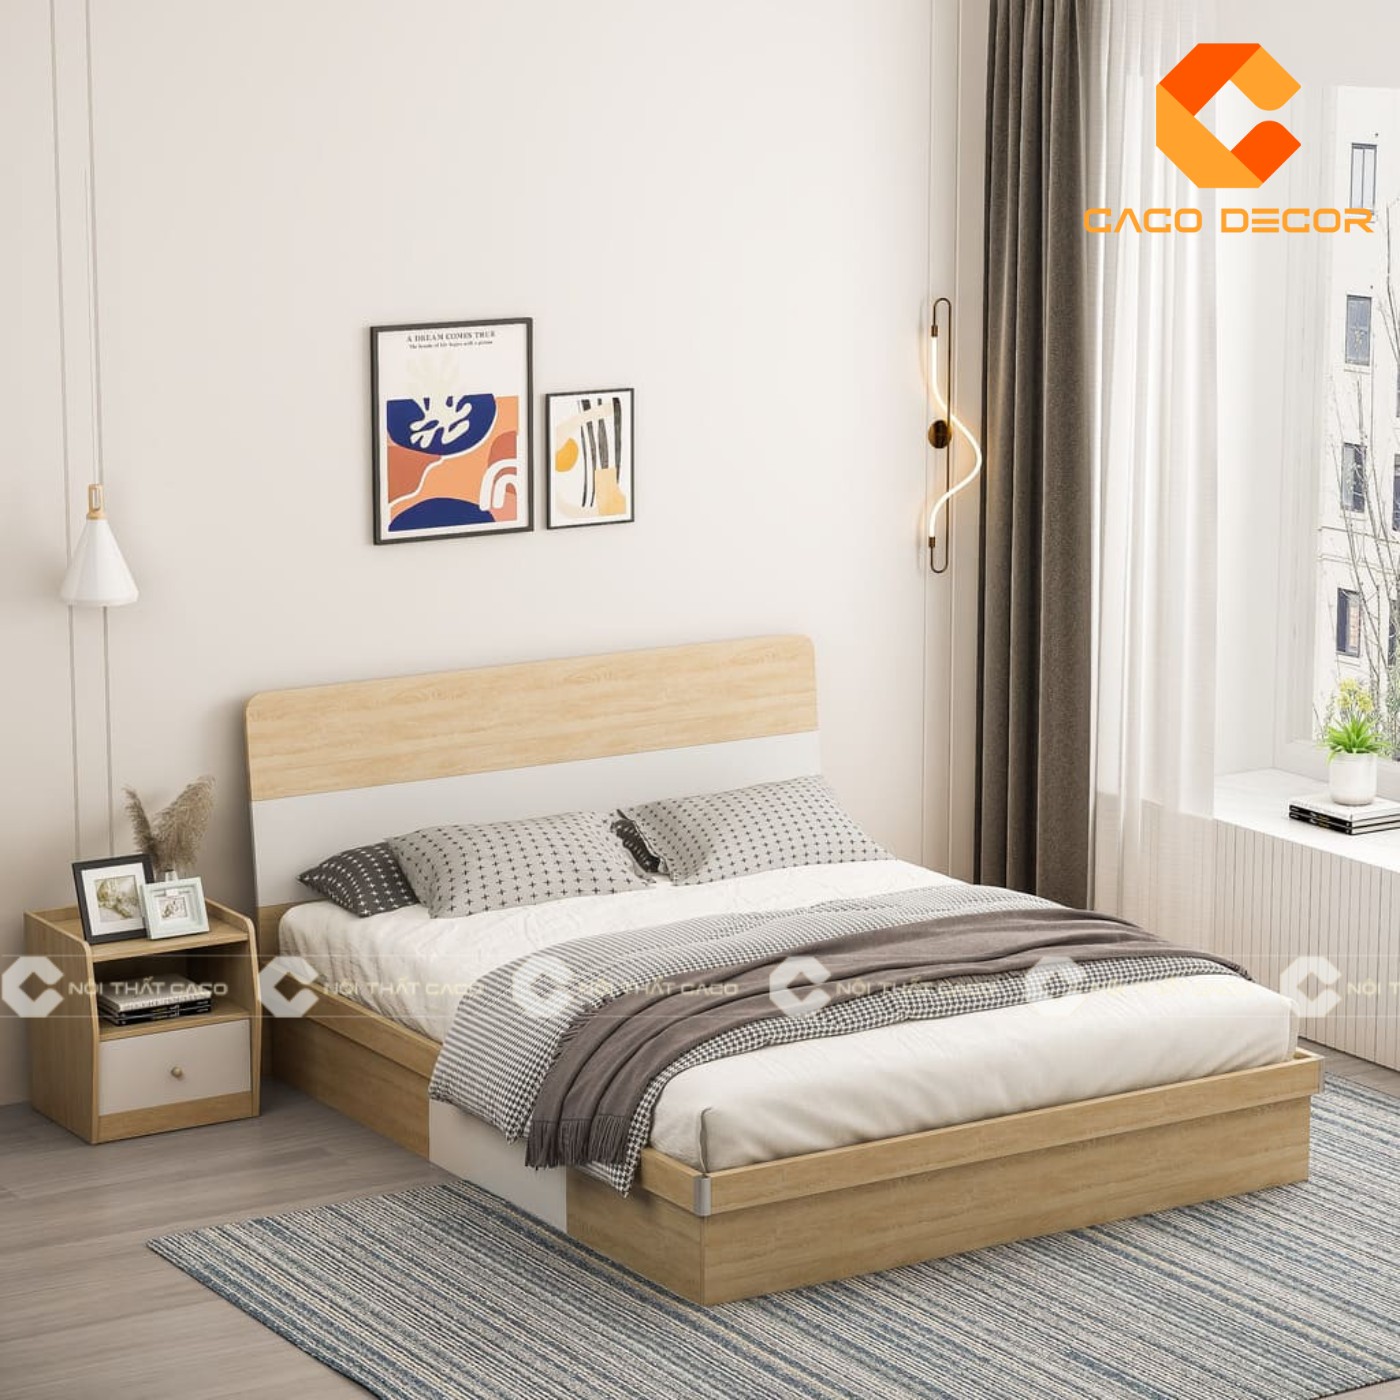 Giường ngủ gỗ công nghiệp đẹp, chất lượng với giá tốt nhất thị trường 4